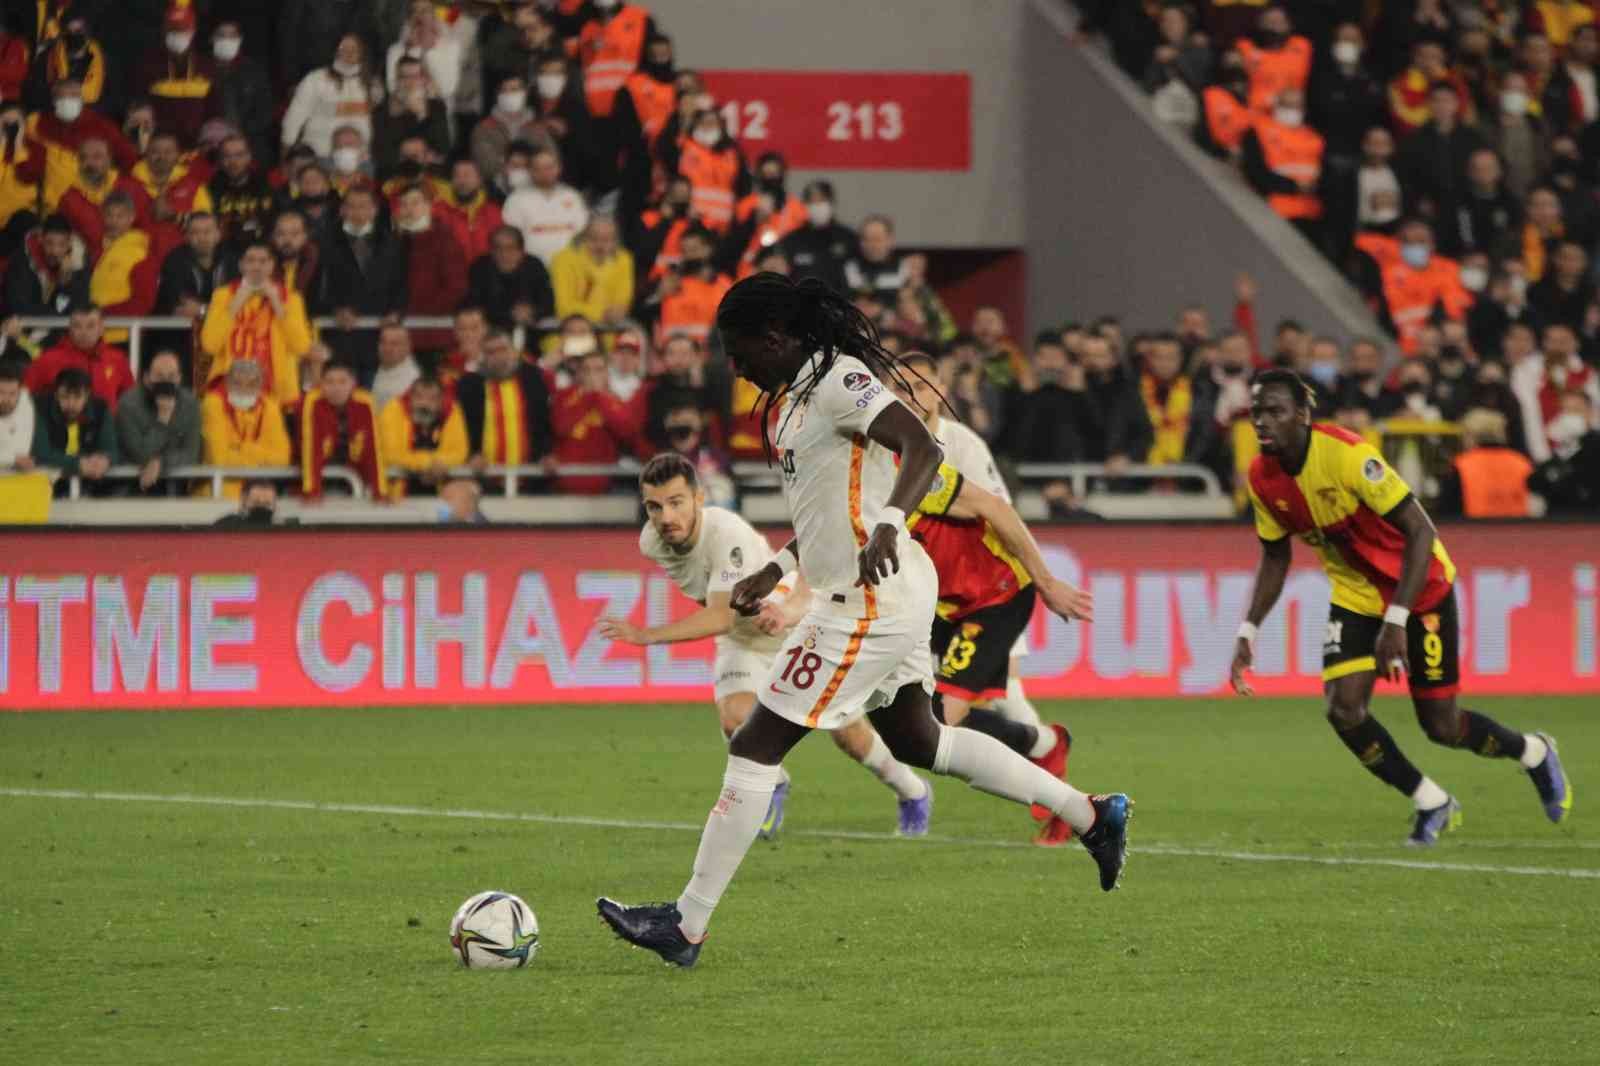 Süper Lig’de 26. haftaya penaltılar damga vurdu #istanbul